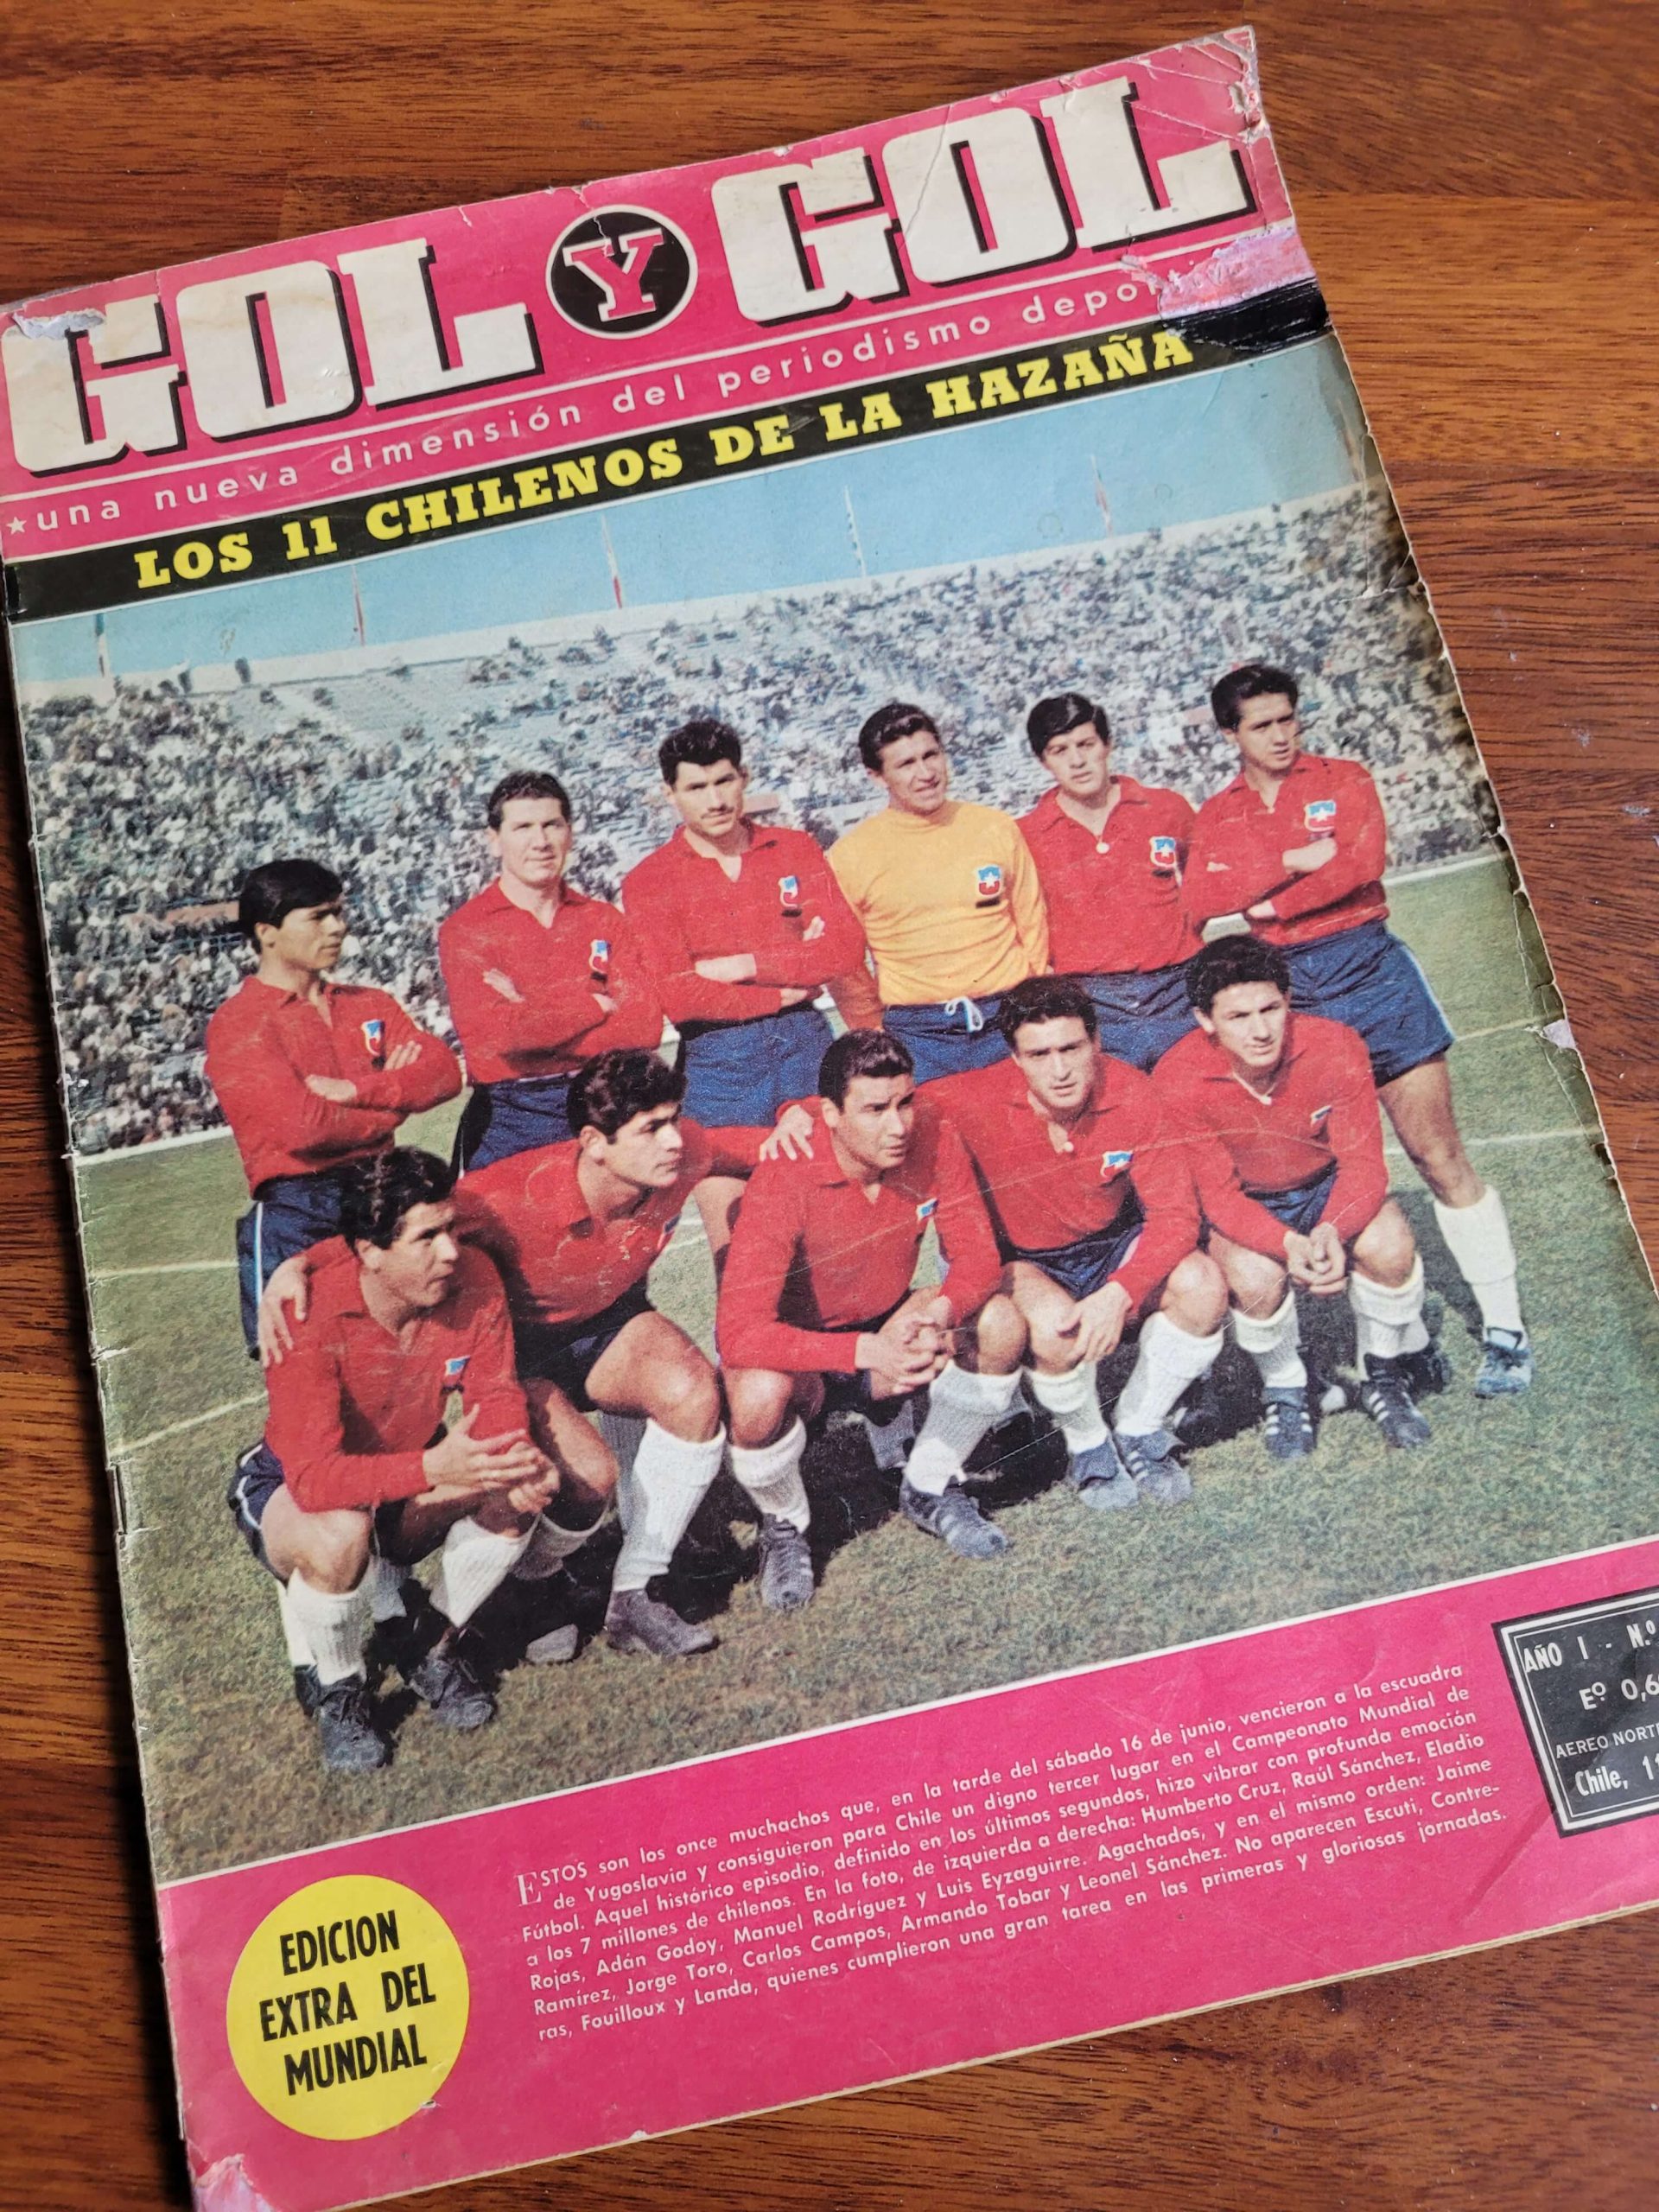 (1962) Revista Gol y Gol: Especial mundial de 1962 “Los 11 chilenos de la hazaña”